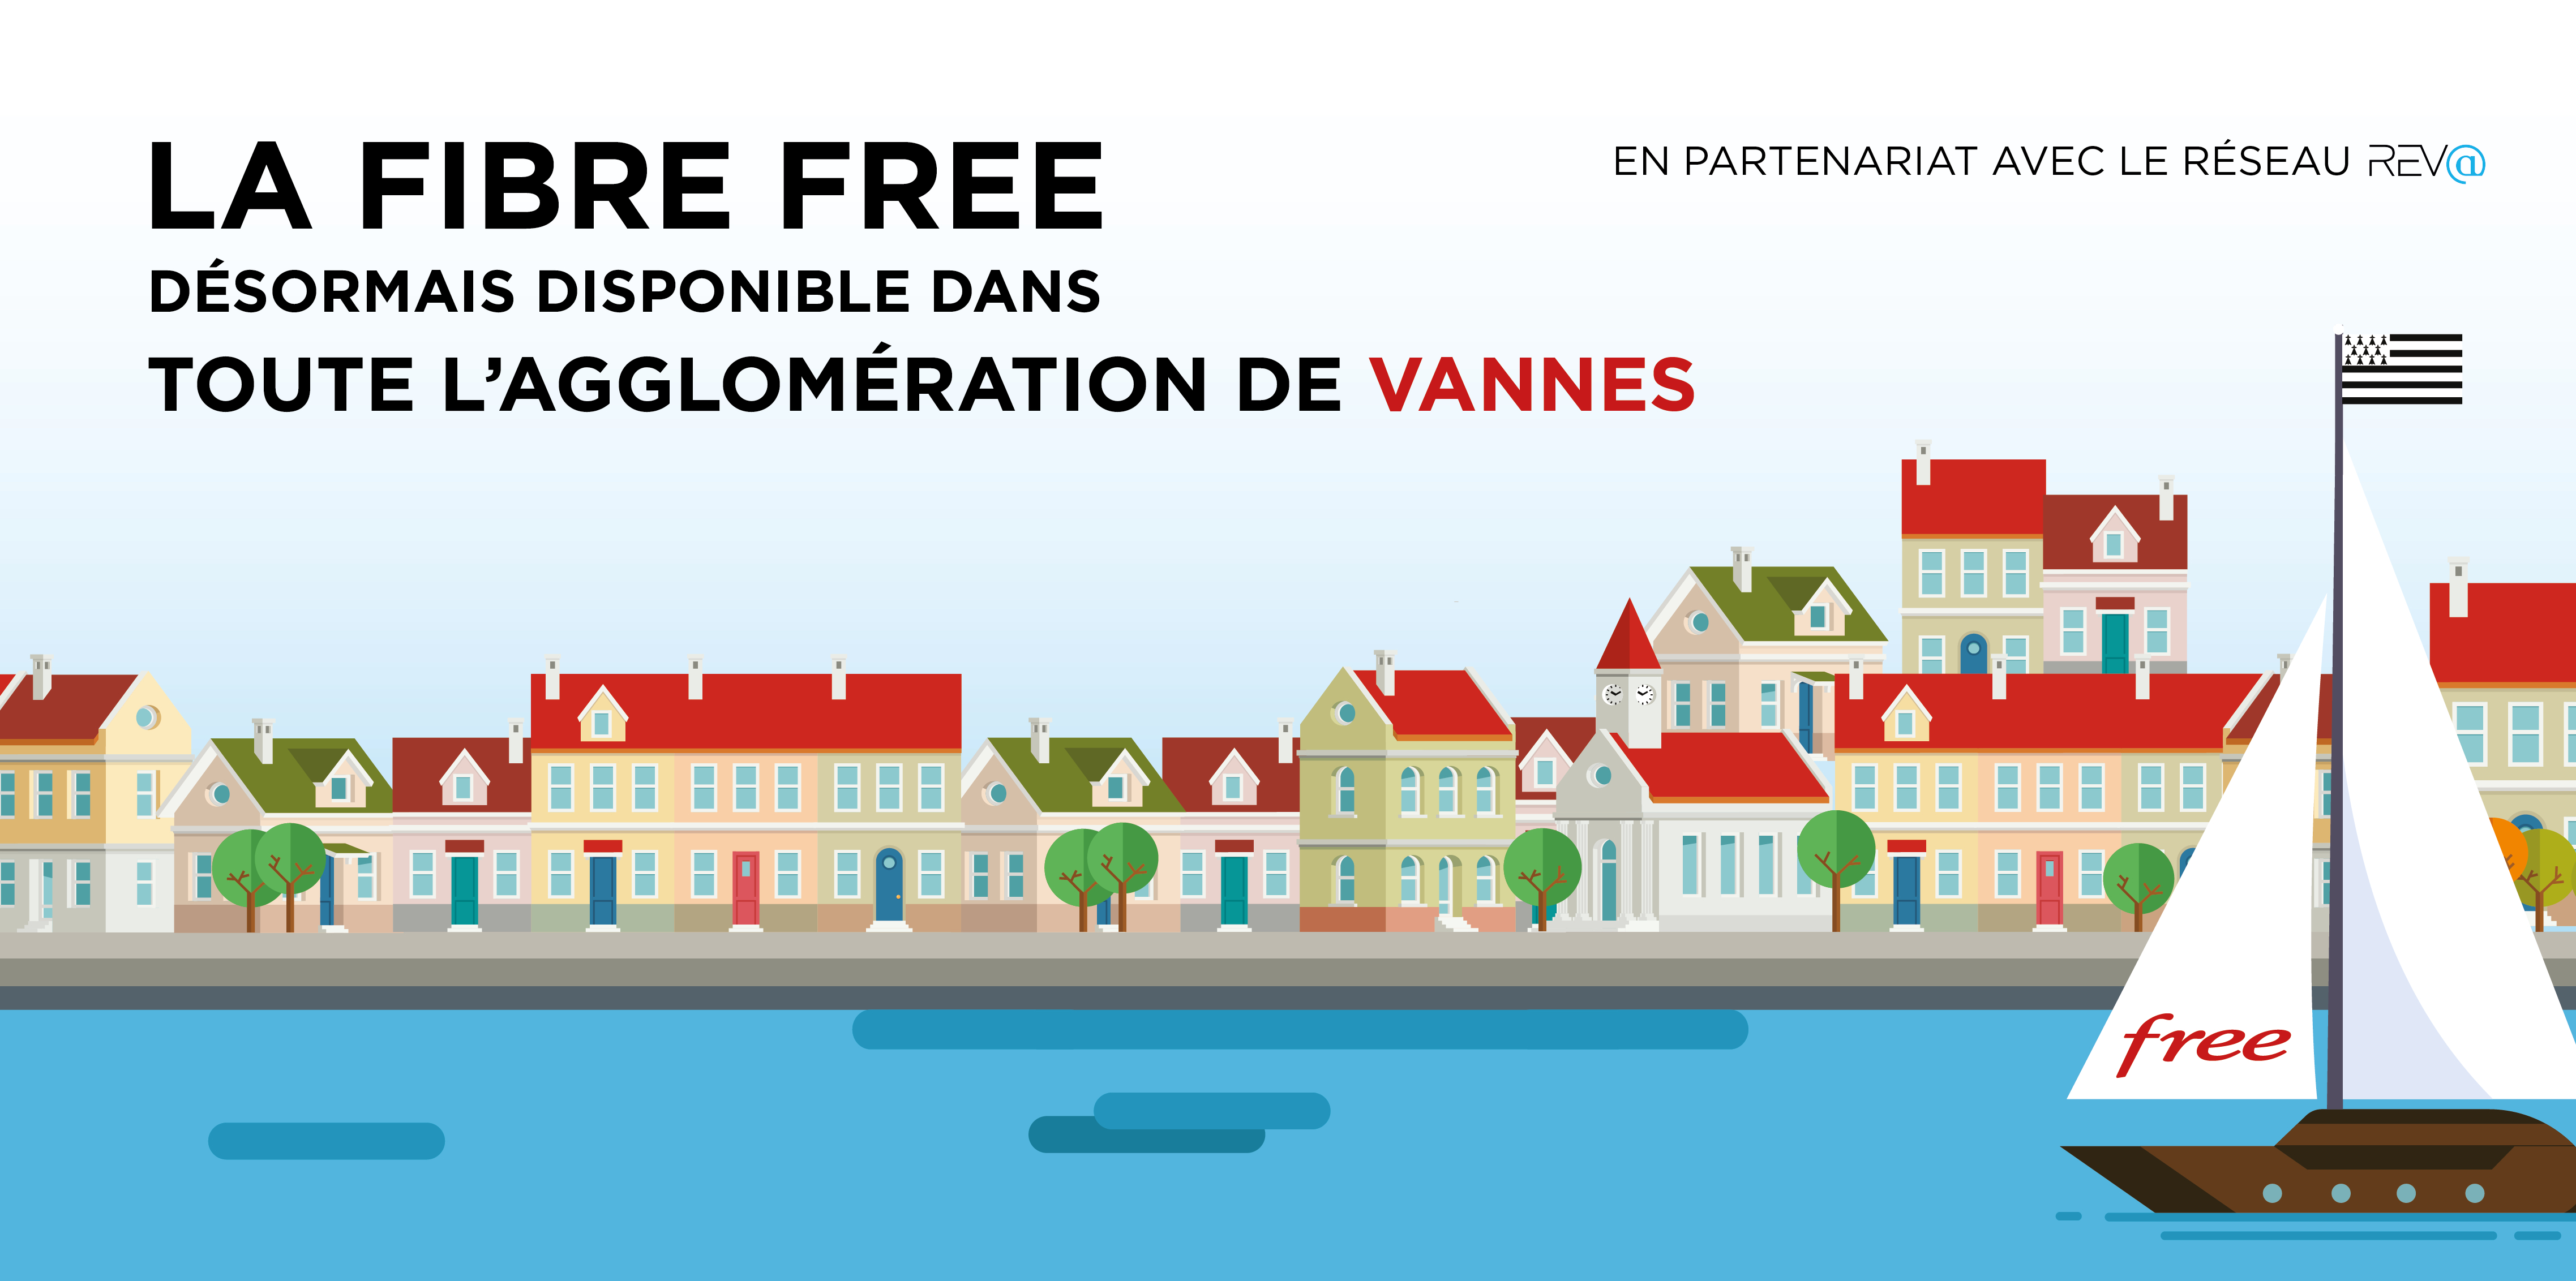 La Fibre Free désormais disponible dans toute l'agglomération de Vannes